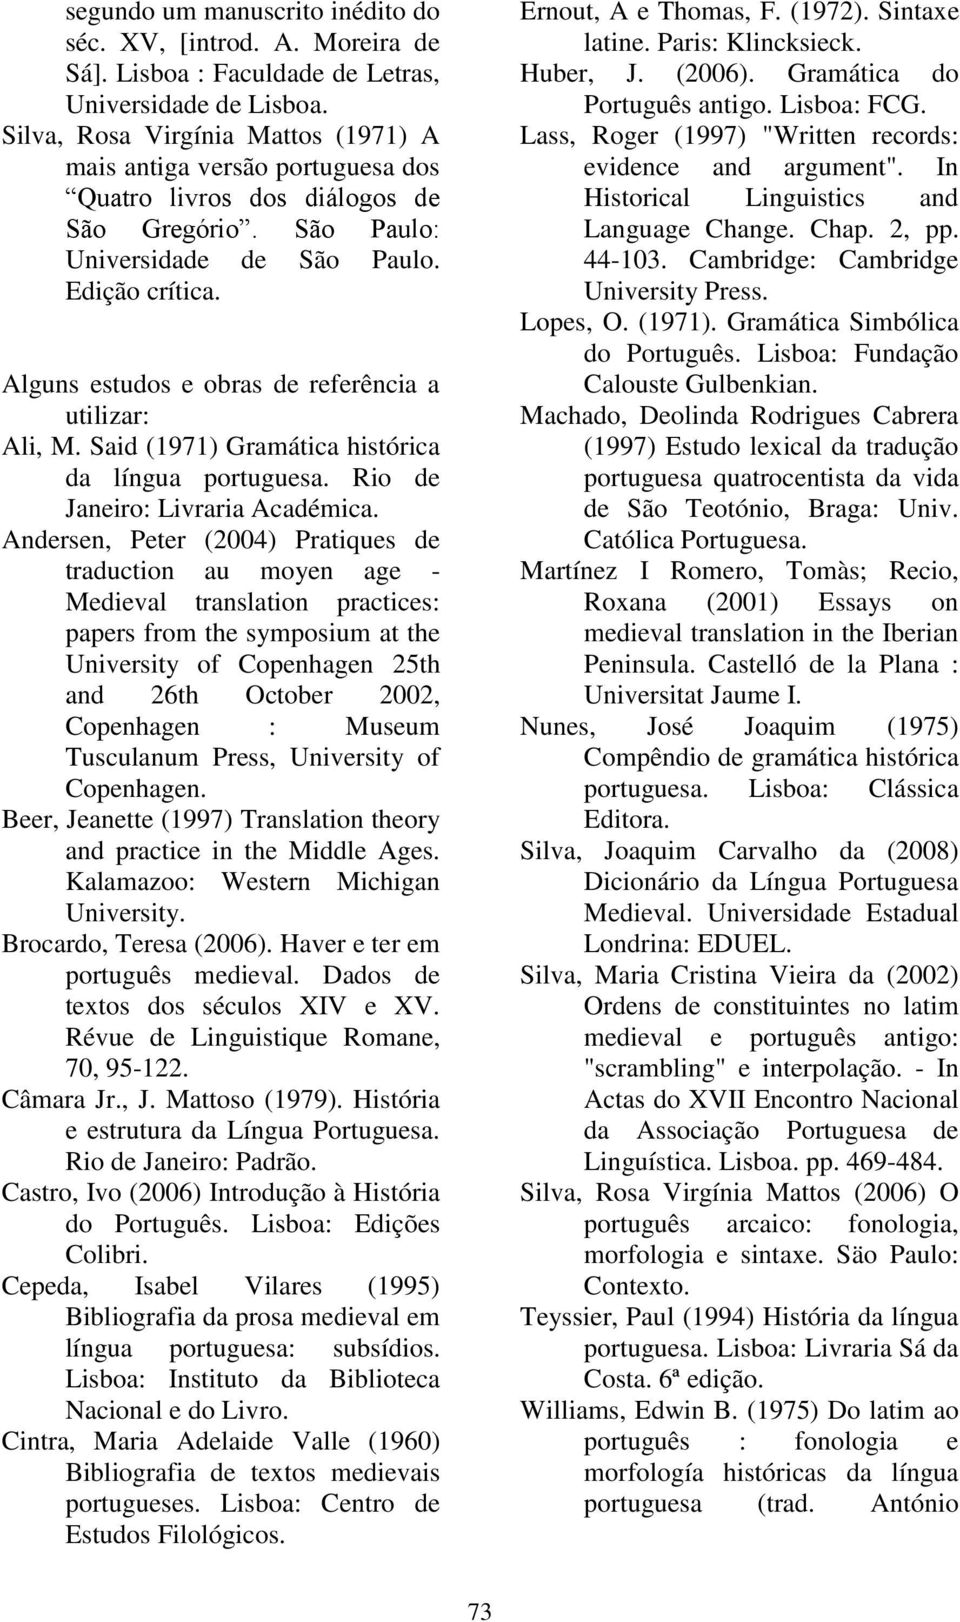 Alguns estudos e obras de referência a utilizar: Ali, M. Said (1971) Gramática histórica da língua portuguesa. Rio de Janeiro: Livraria Académica.